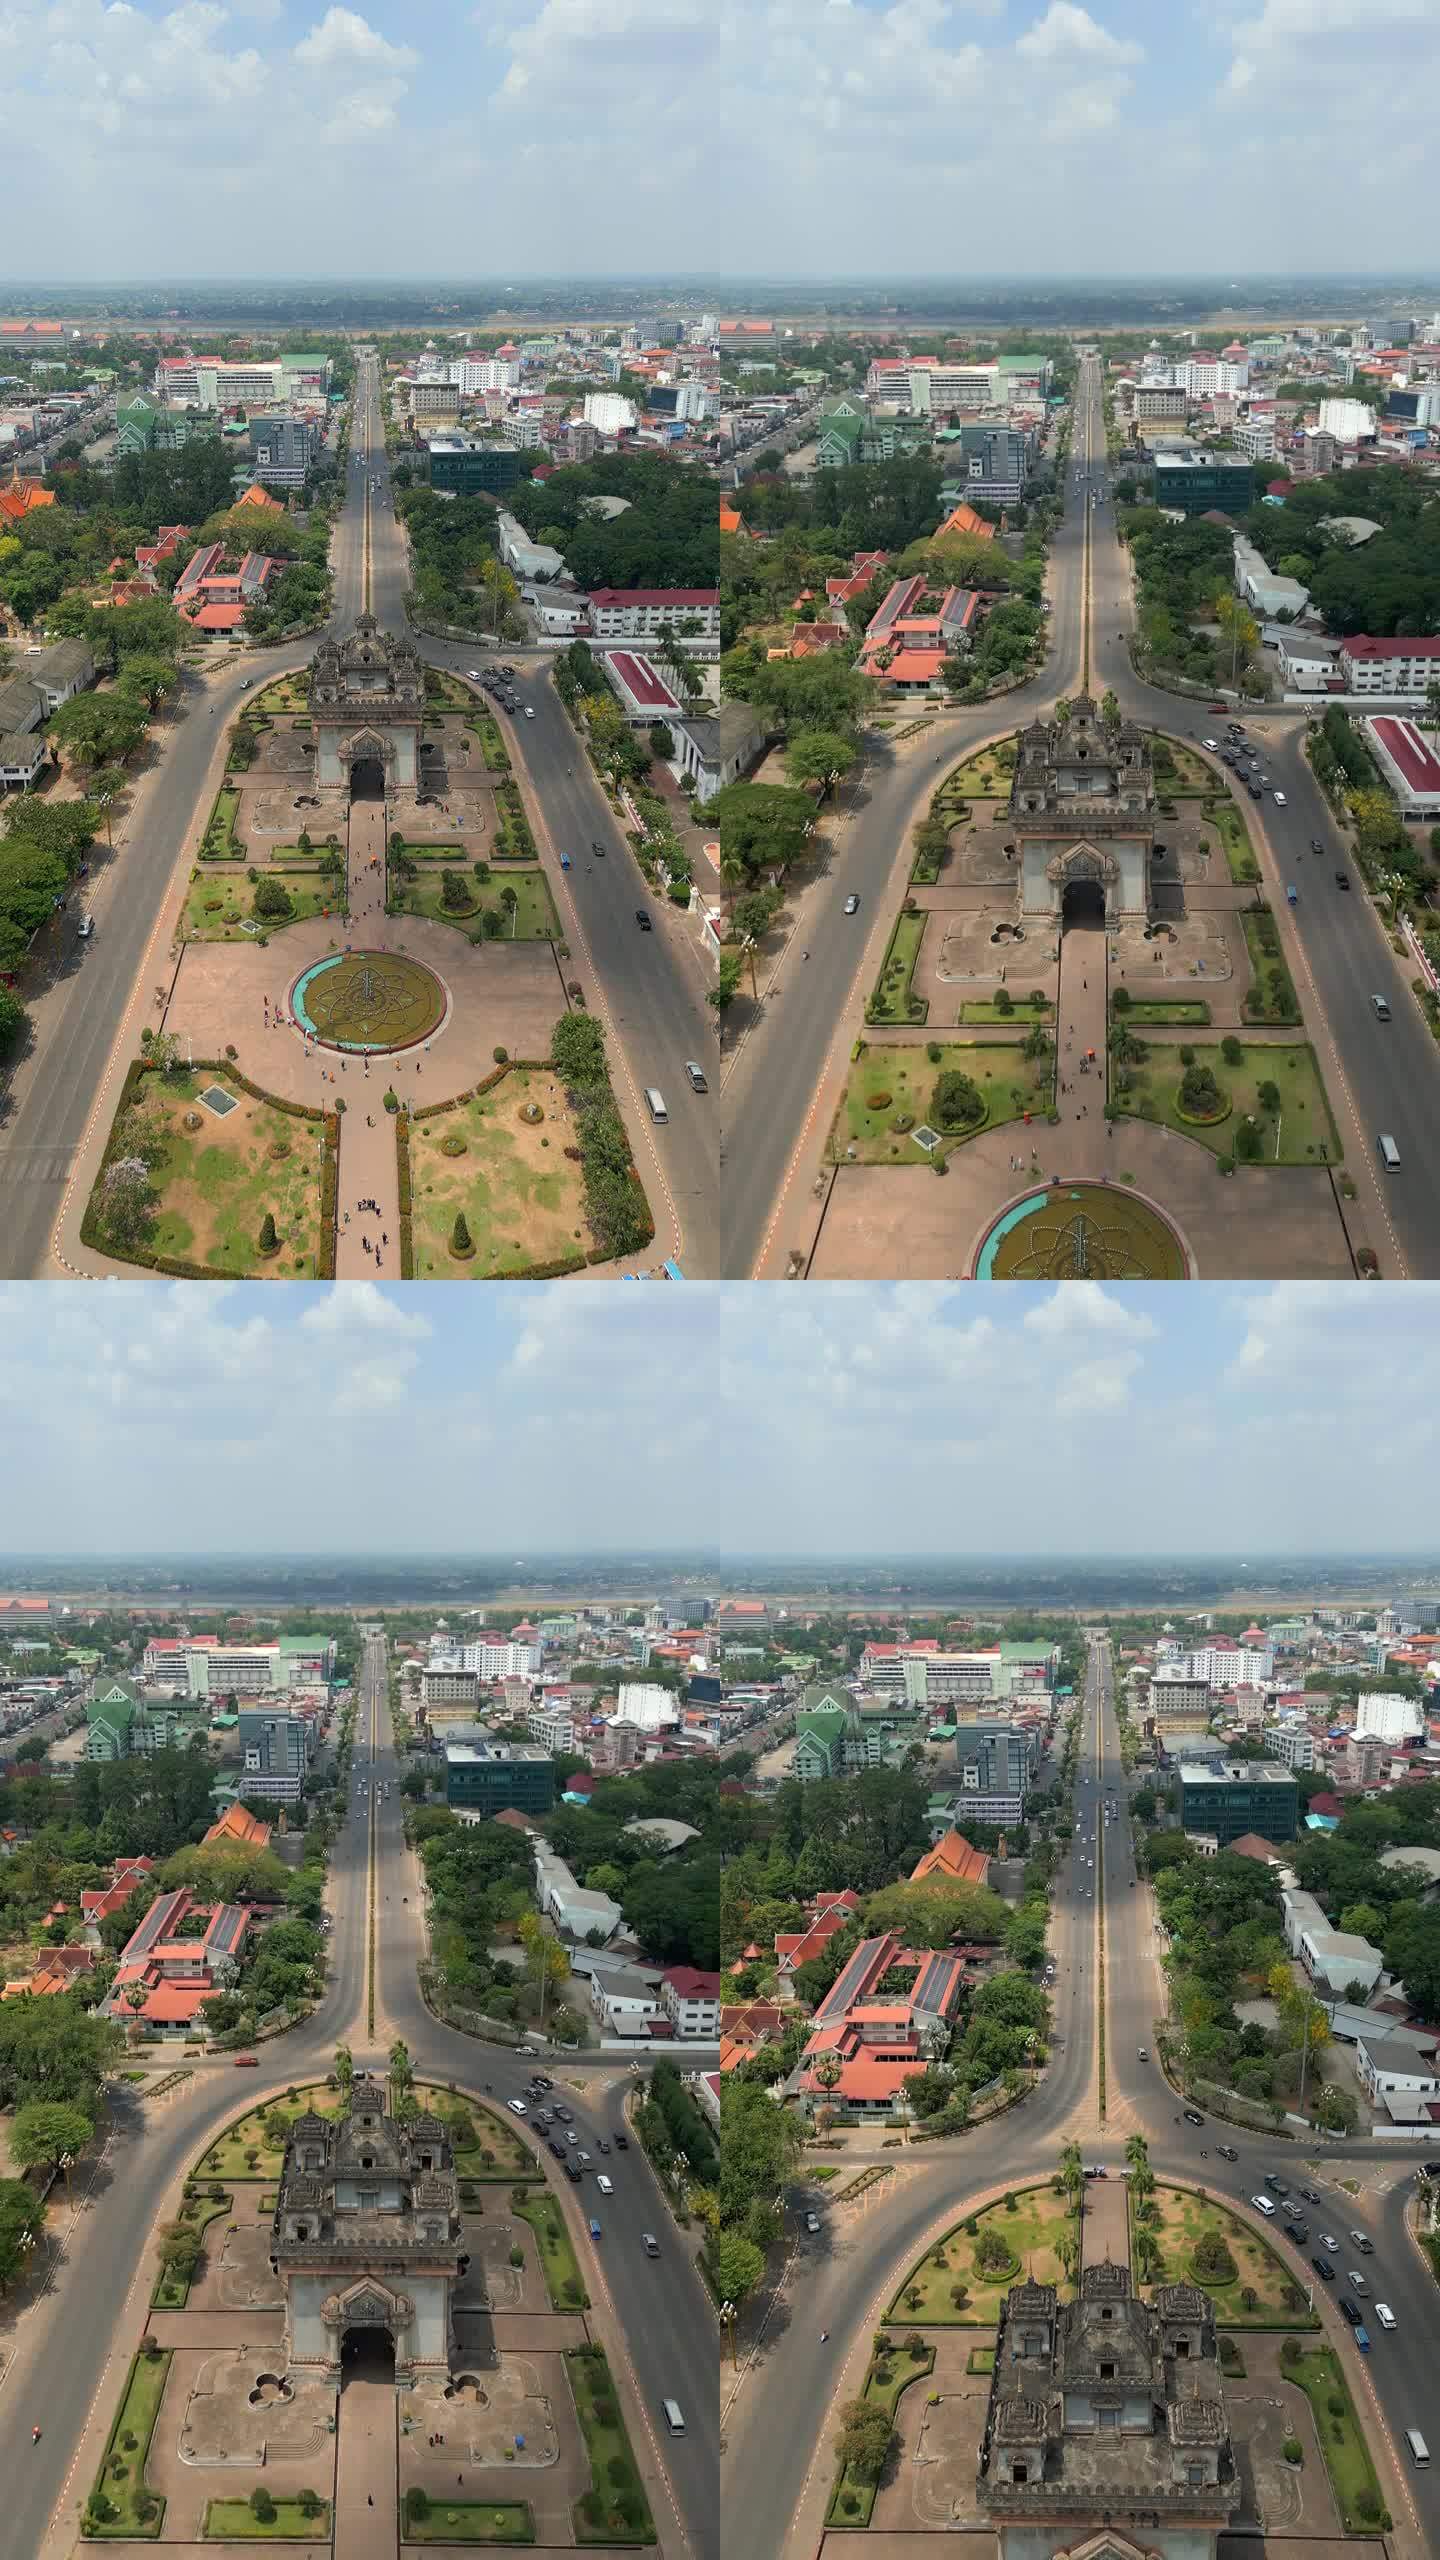 老挝首都万象的市中心。